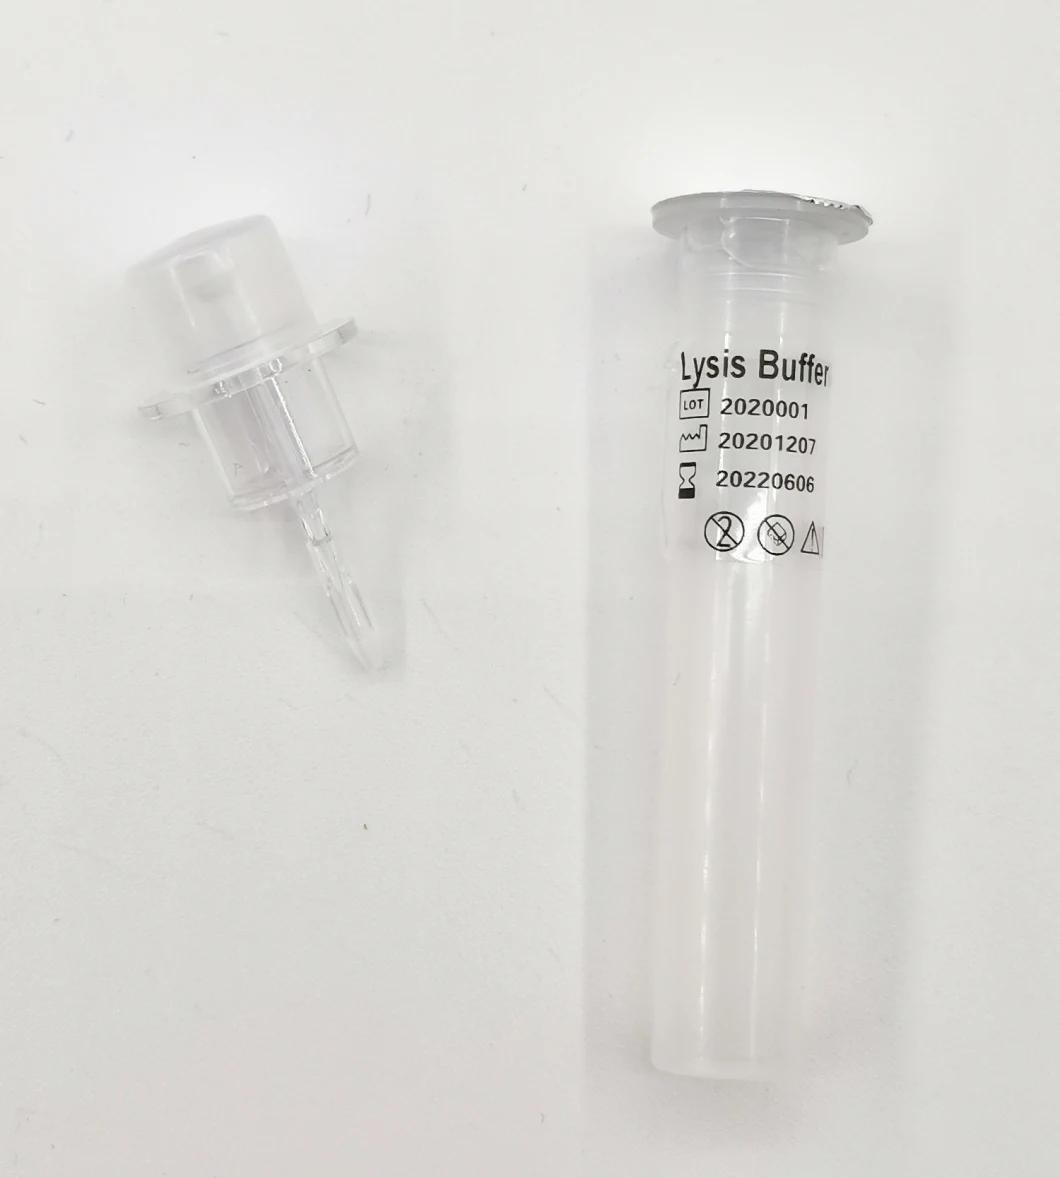 Antigen Test Kit Detection Cassette